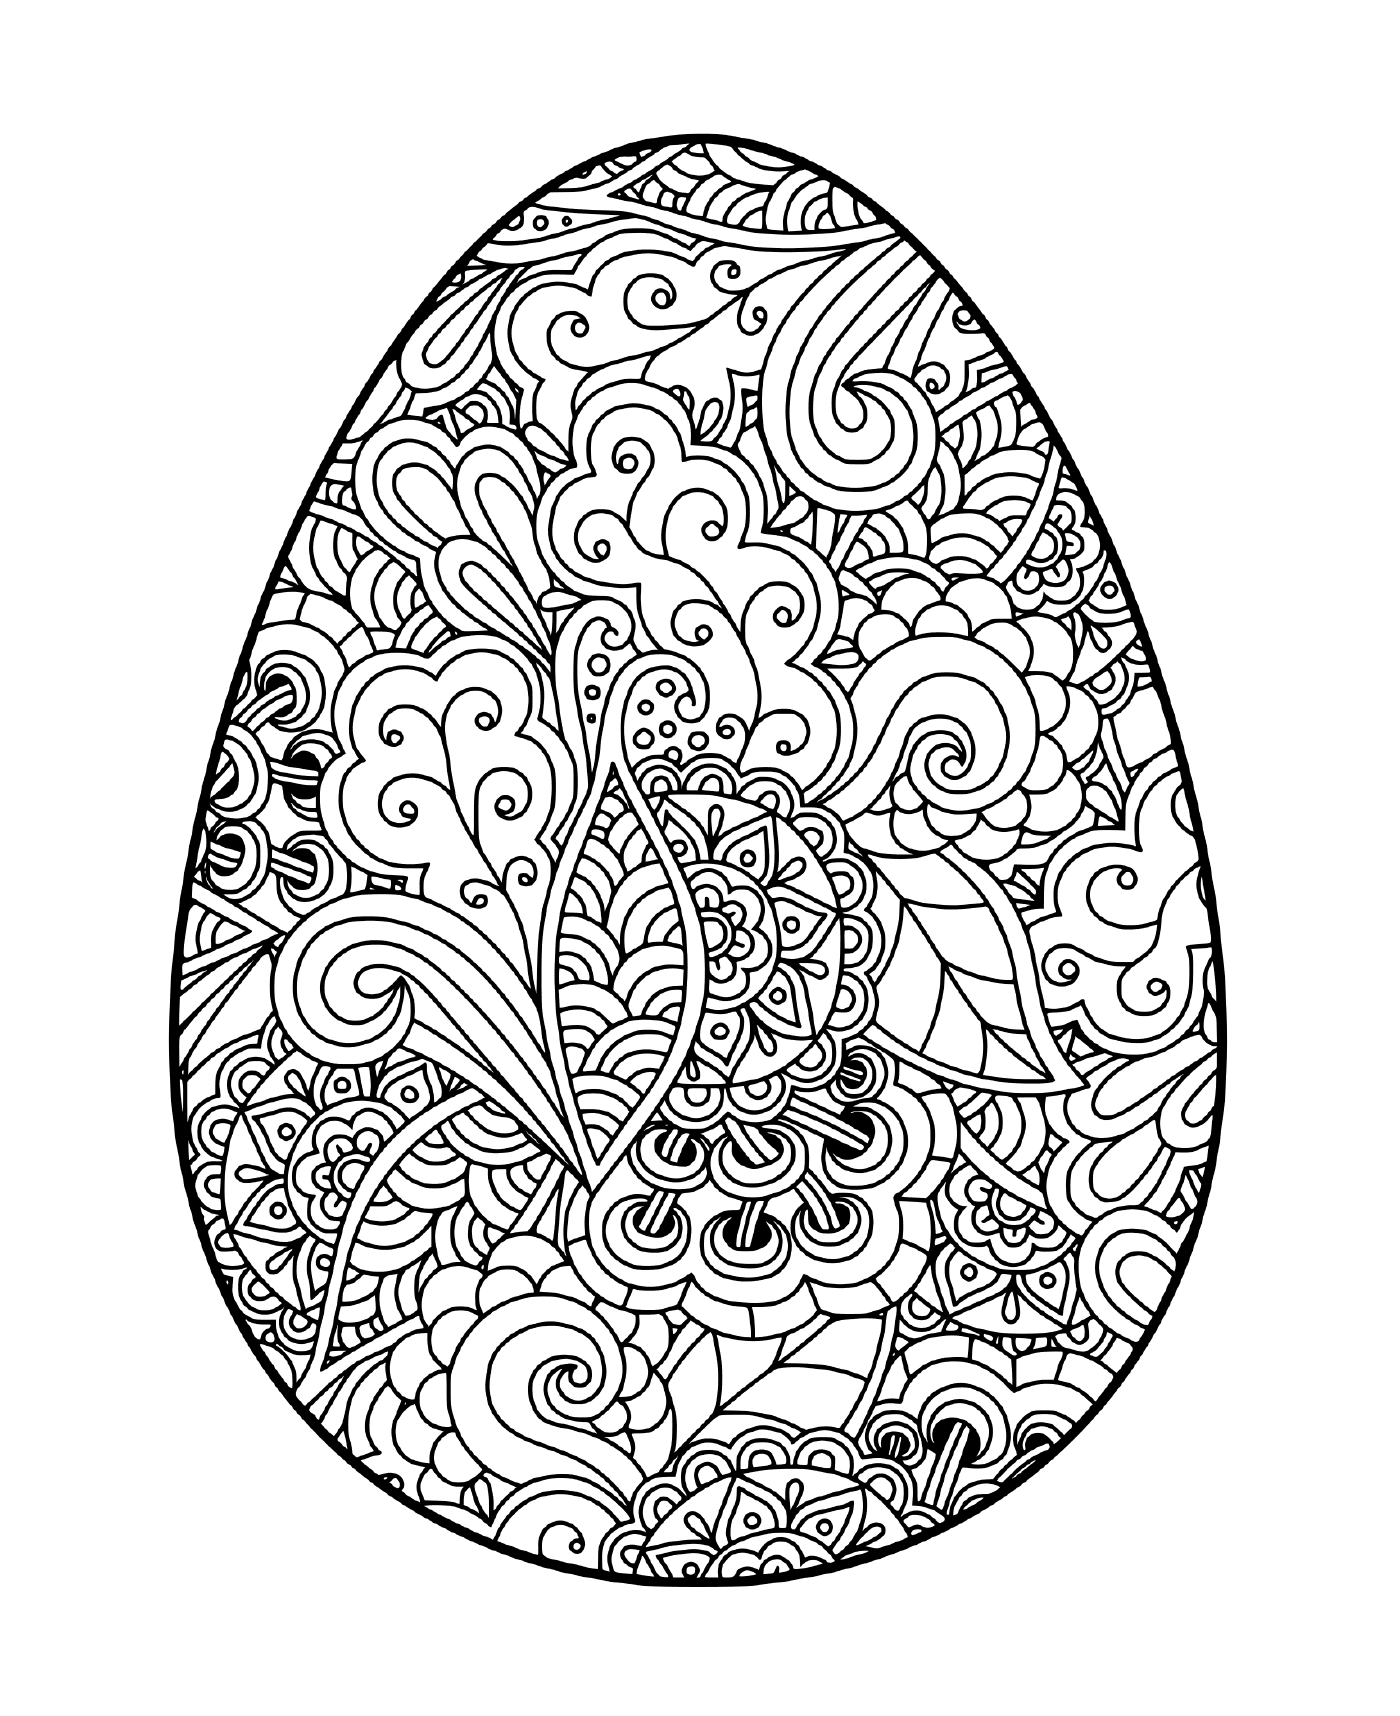  Huevo de Pascua con motivos florales 